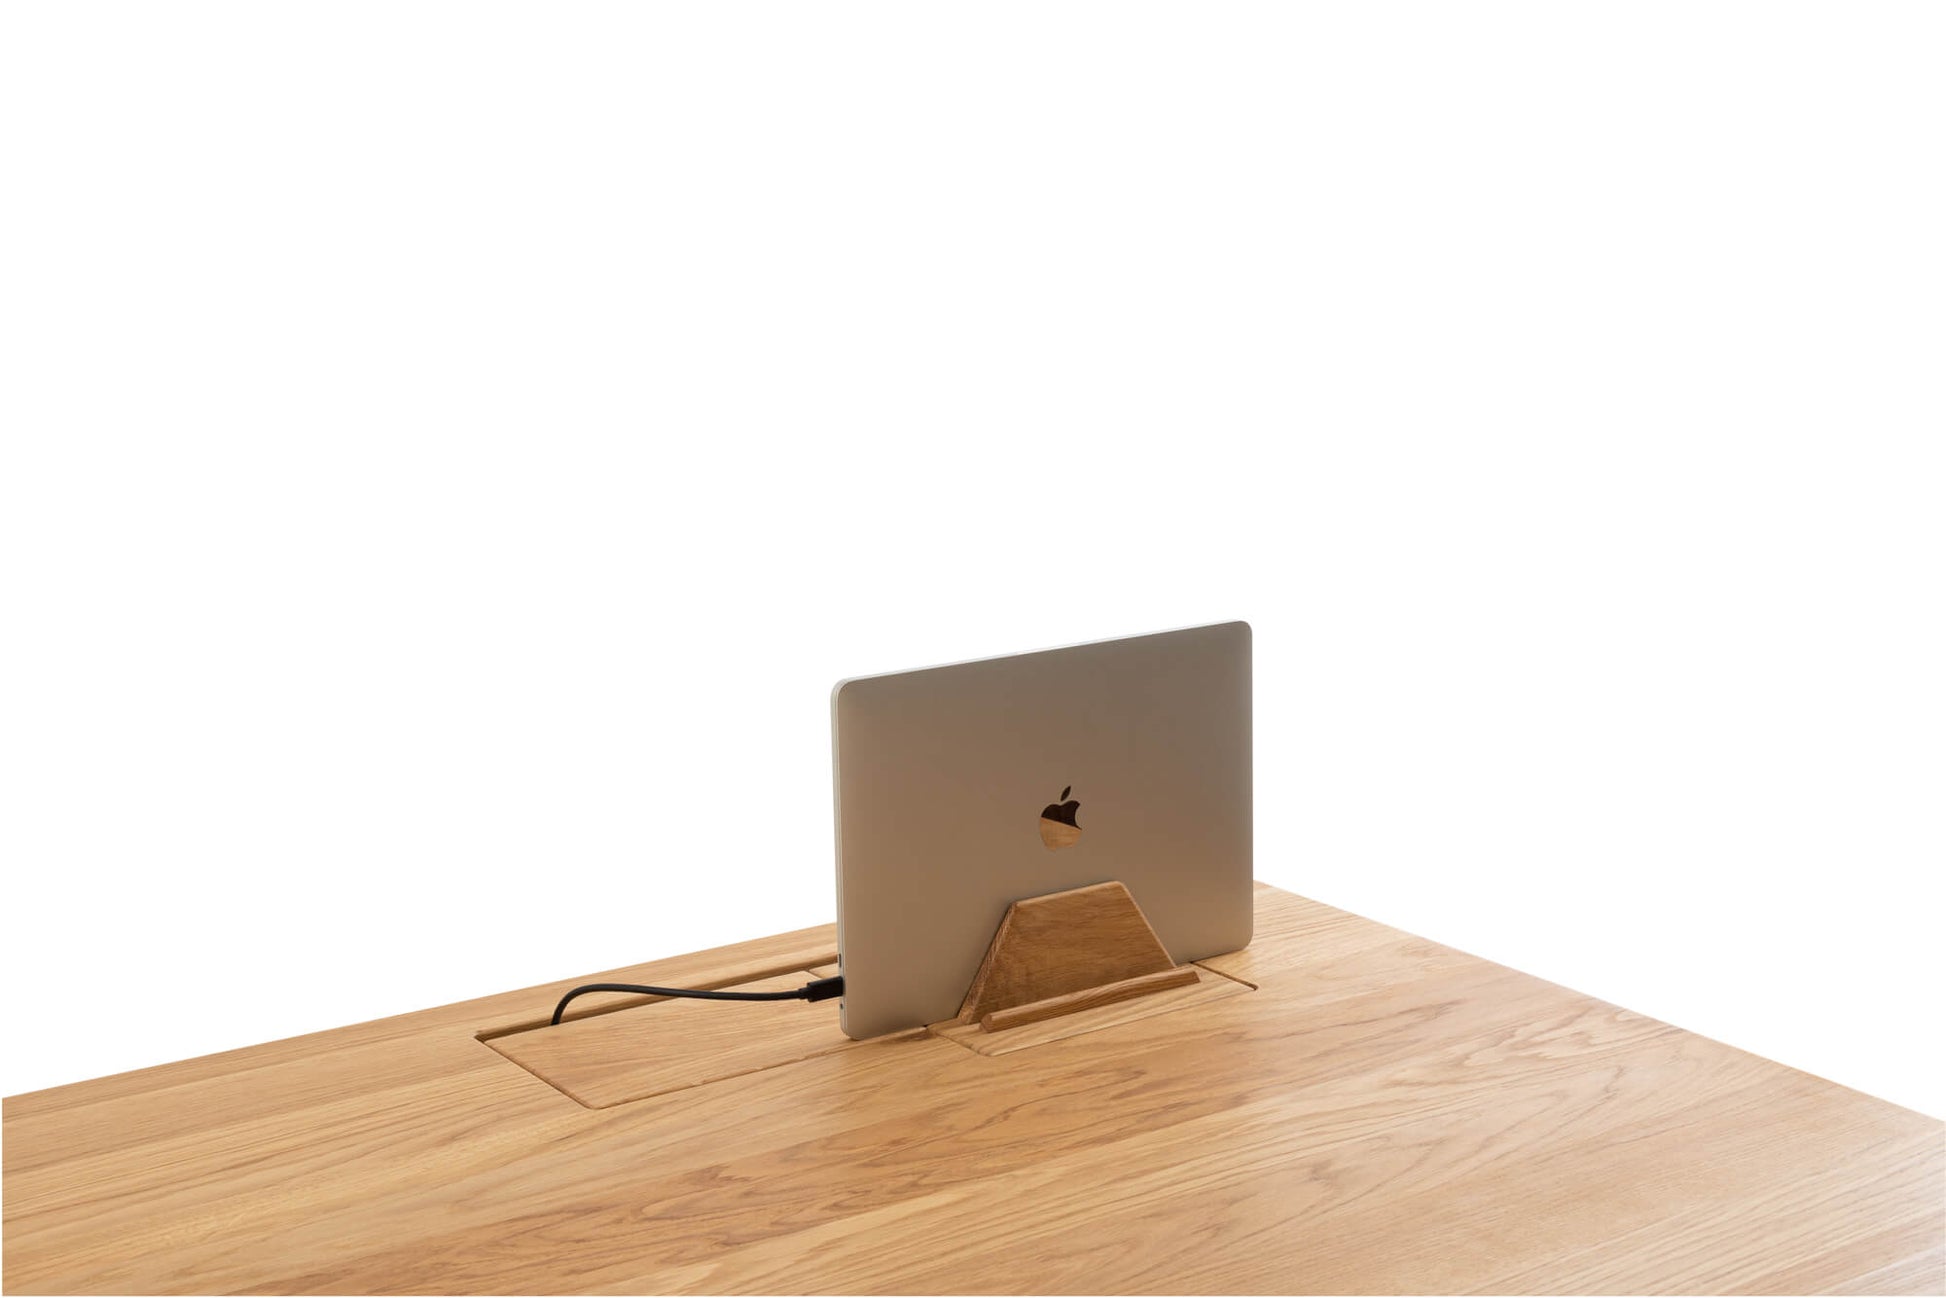 Support pour ordinateur portable en bois - Bureau debout